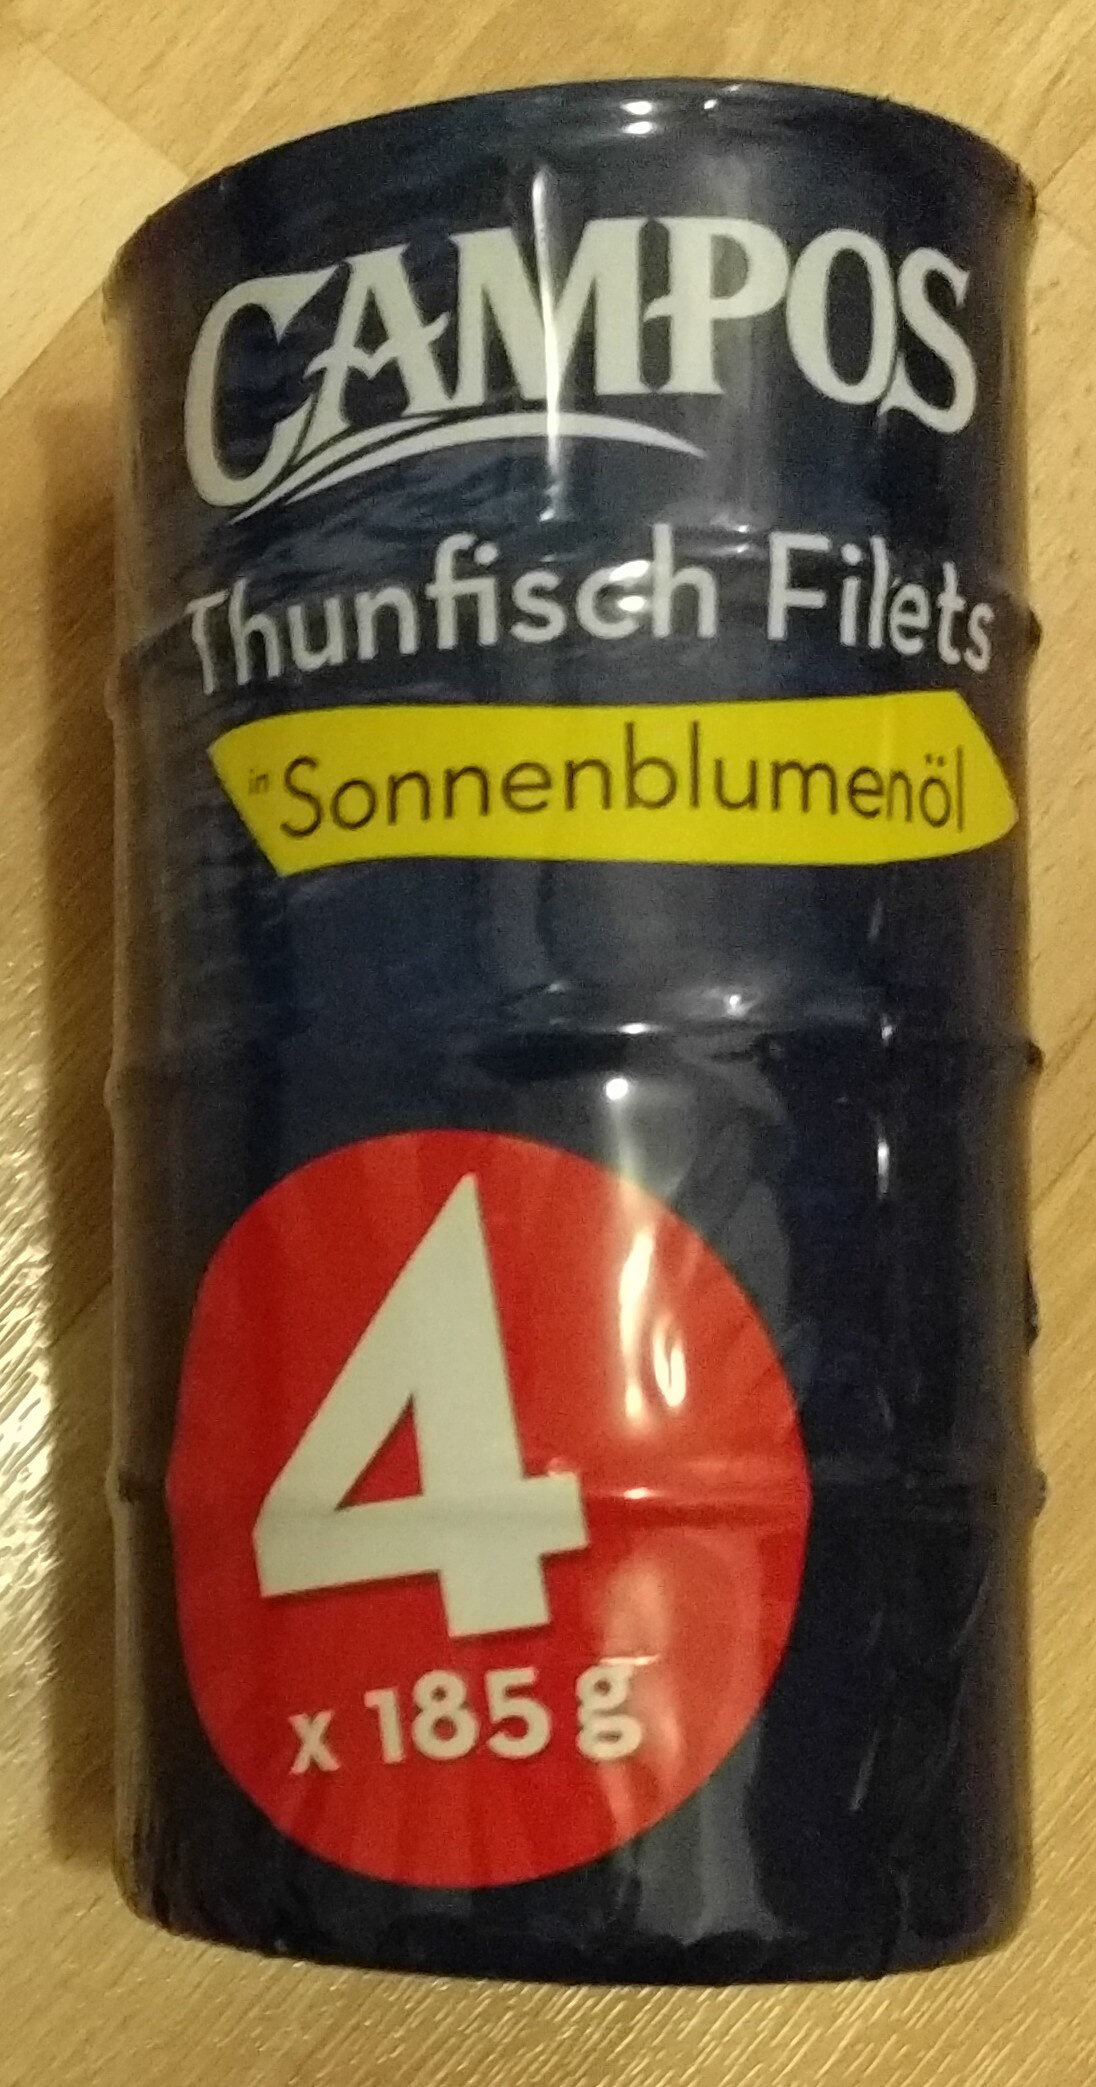 Thunfisch Filets in Sonnenblumenöl - Product - en